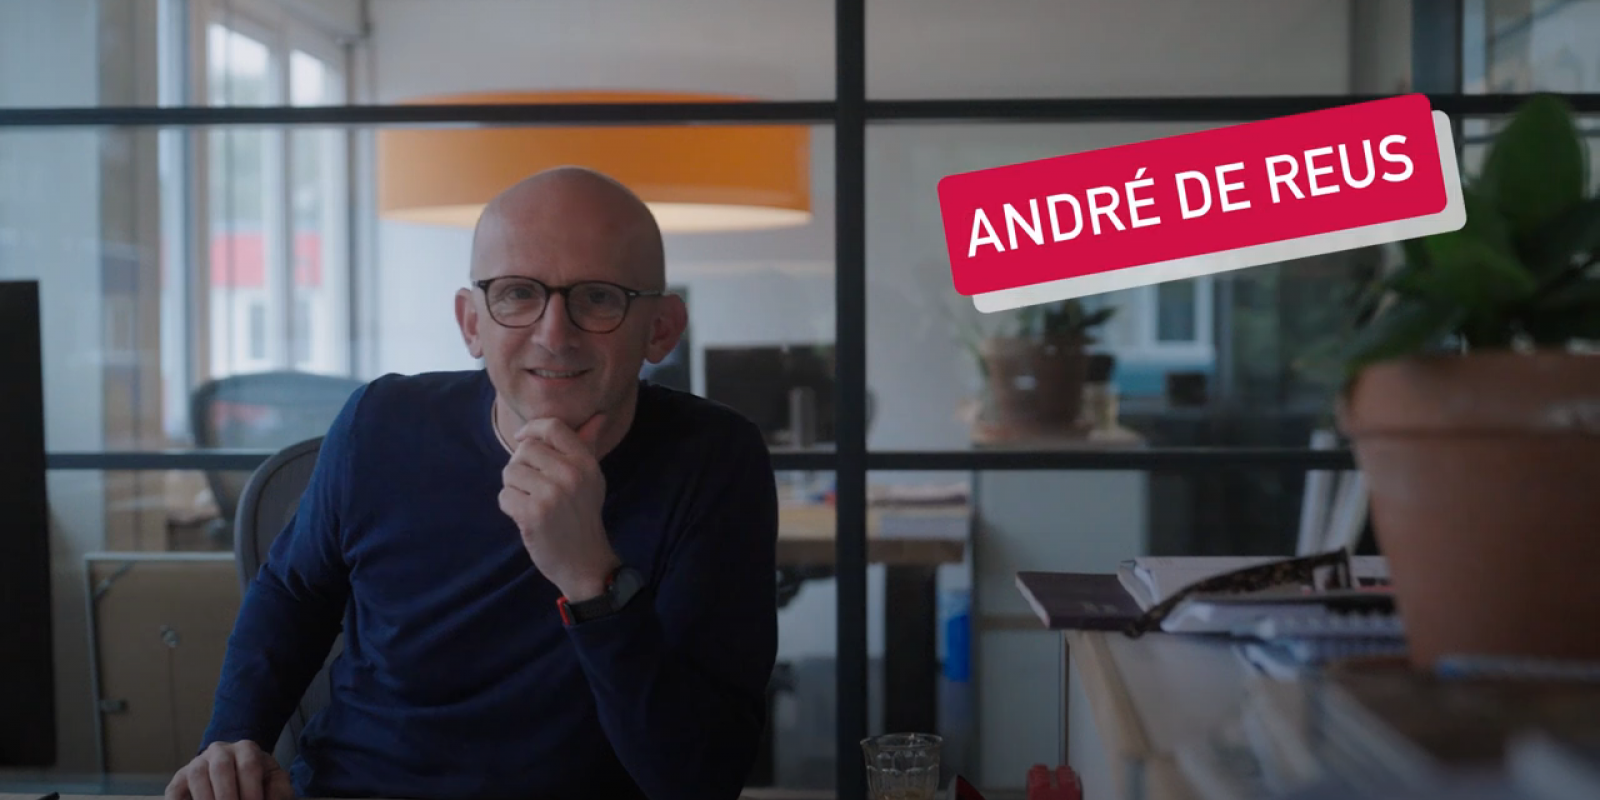 De week van... senior ontwikkelaar André!